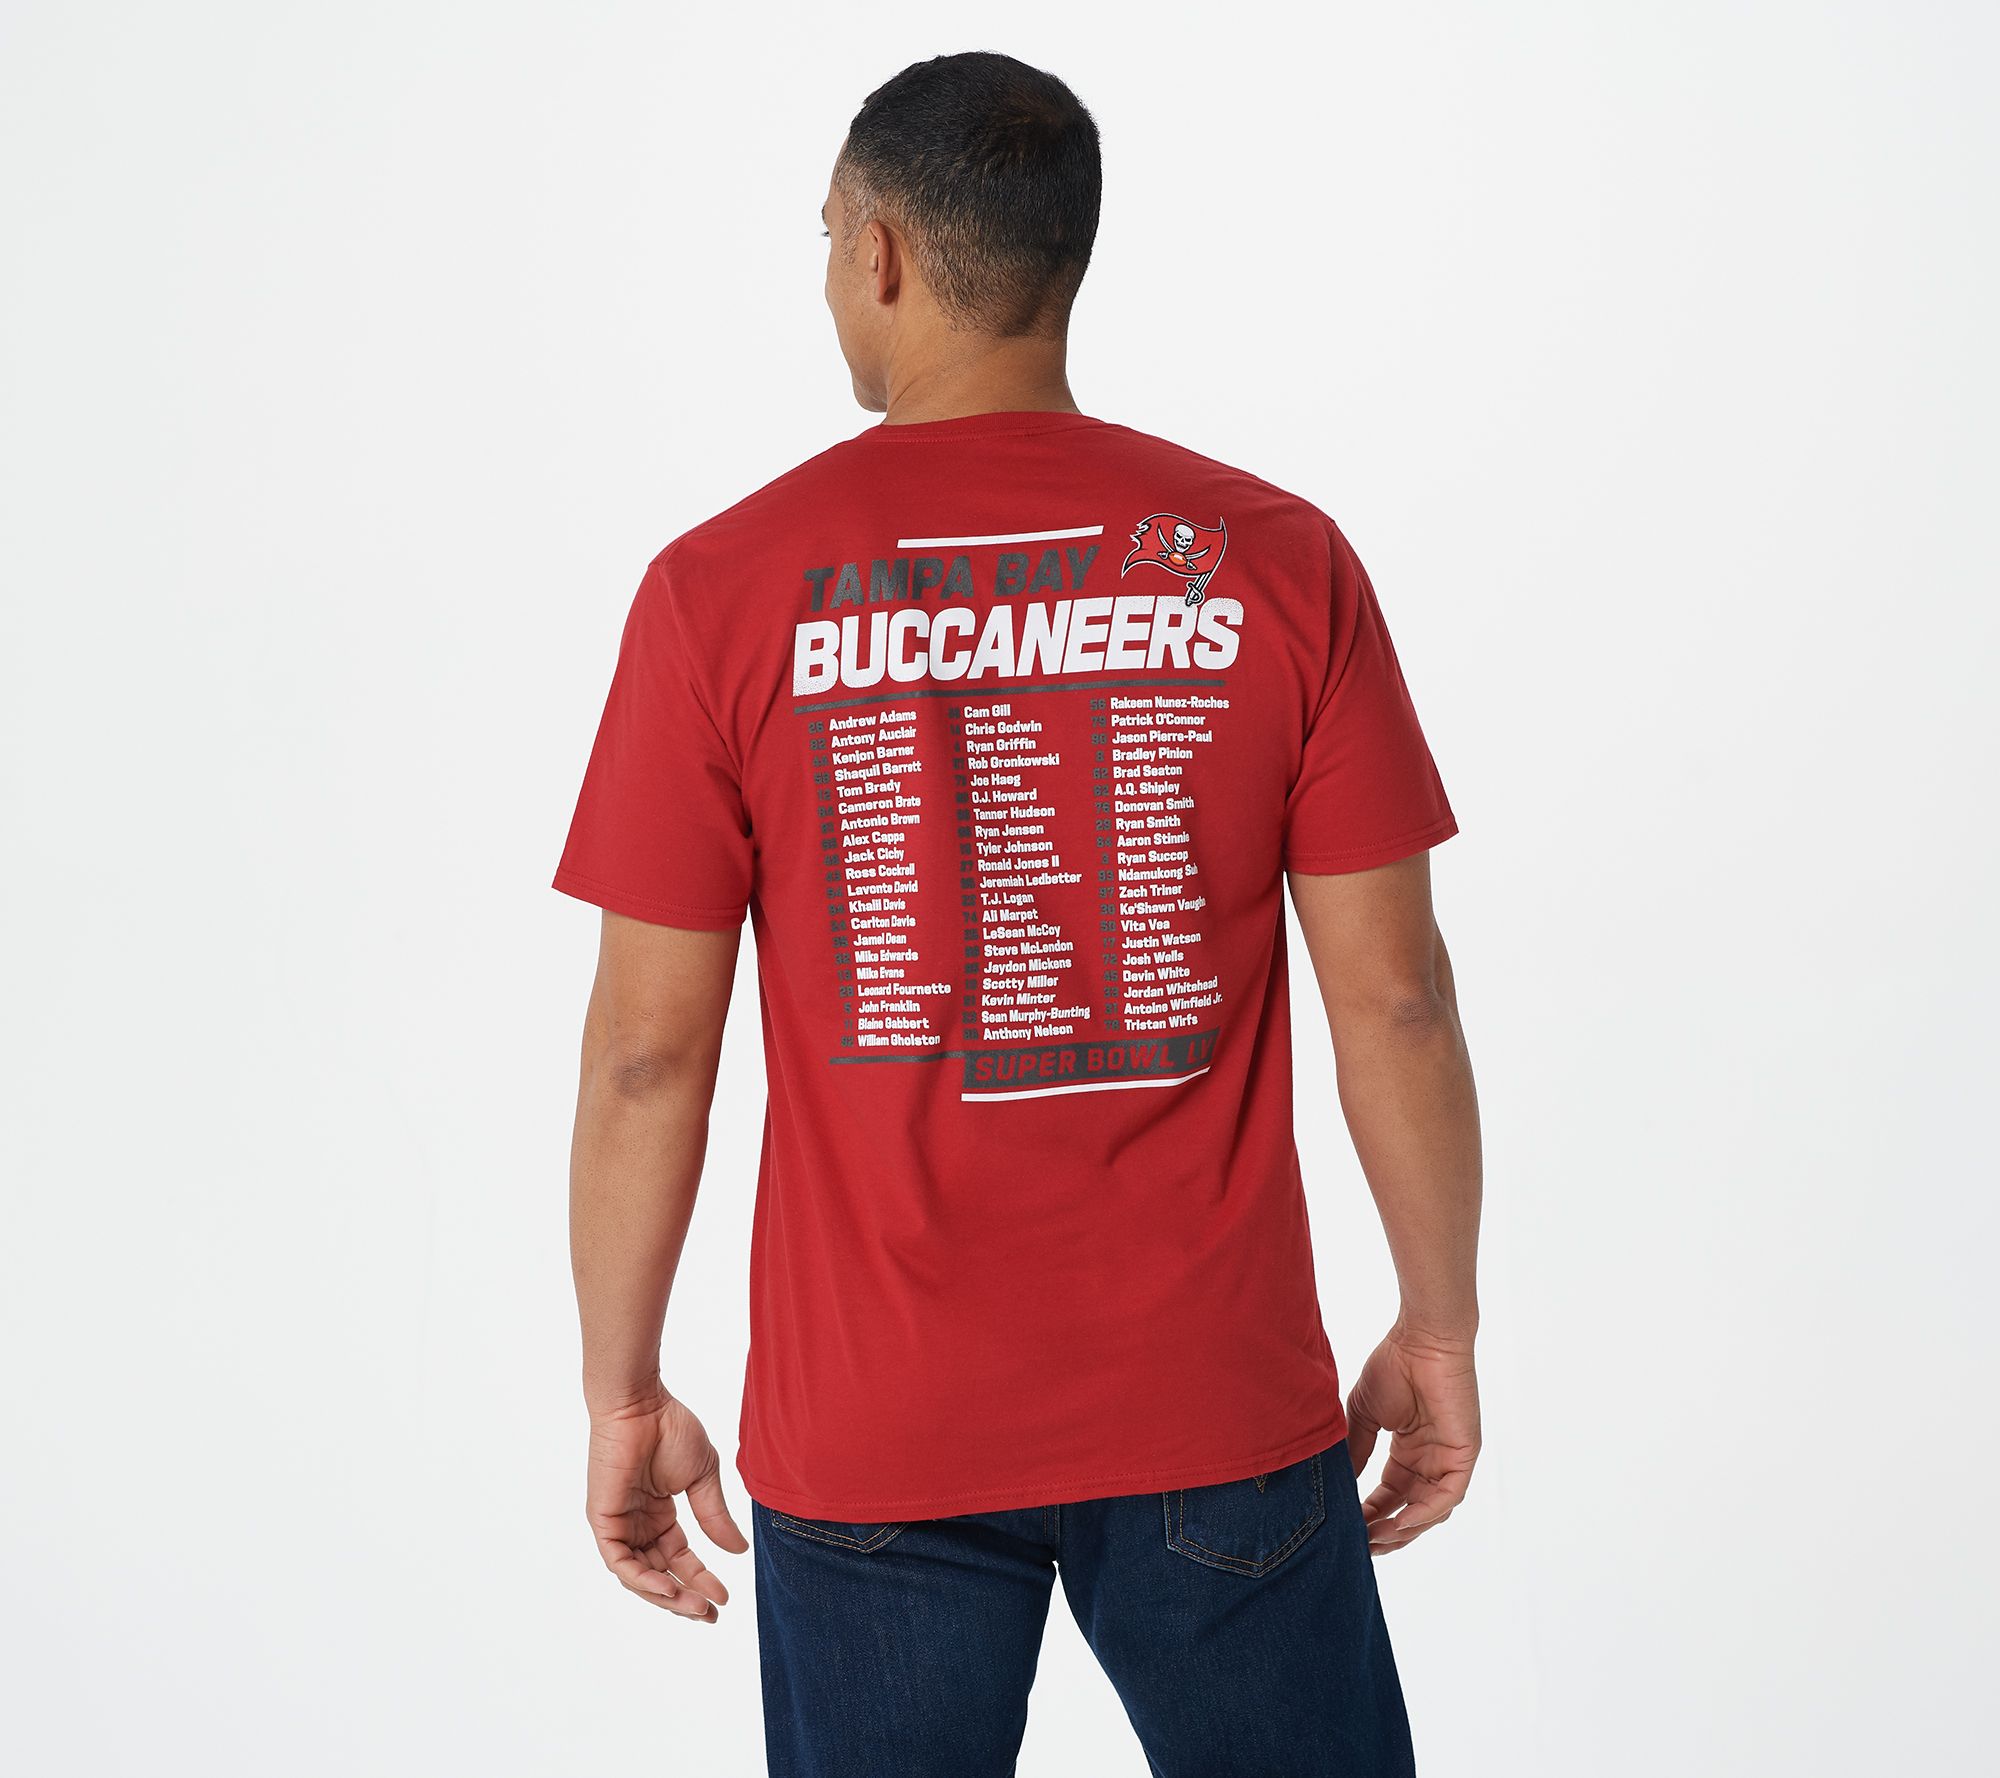 Buccaneers tee shirt